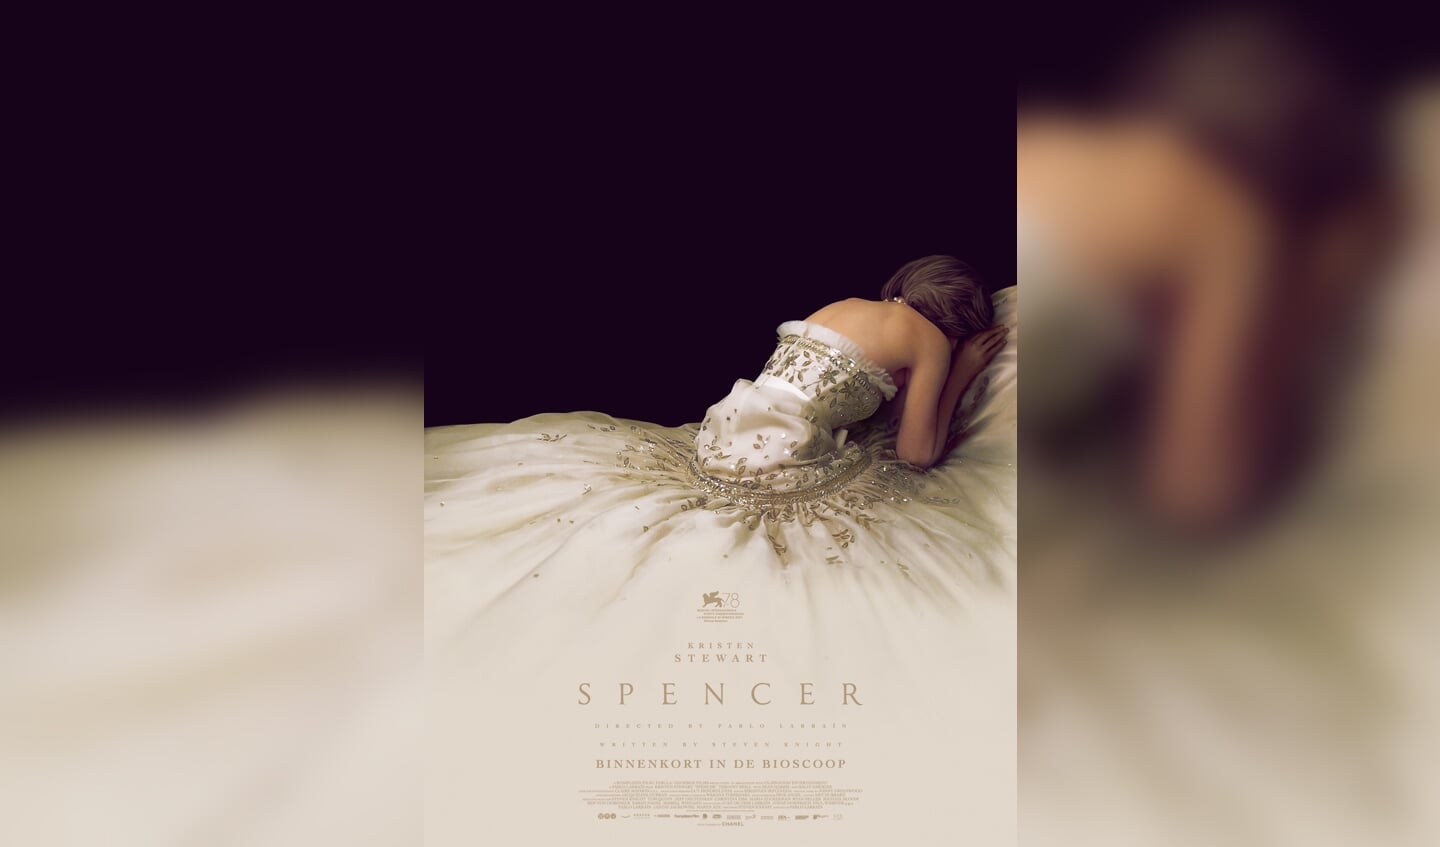 Spencer, de film over het huwelijk van prinses Diana en prins Charles, bij Cinema Enkhuizen.